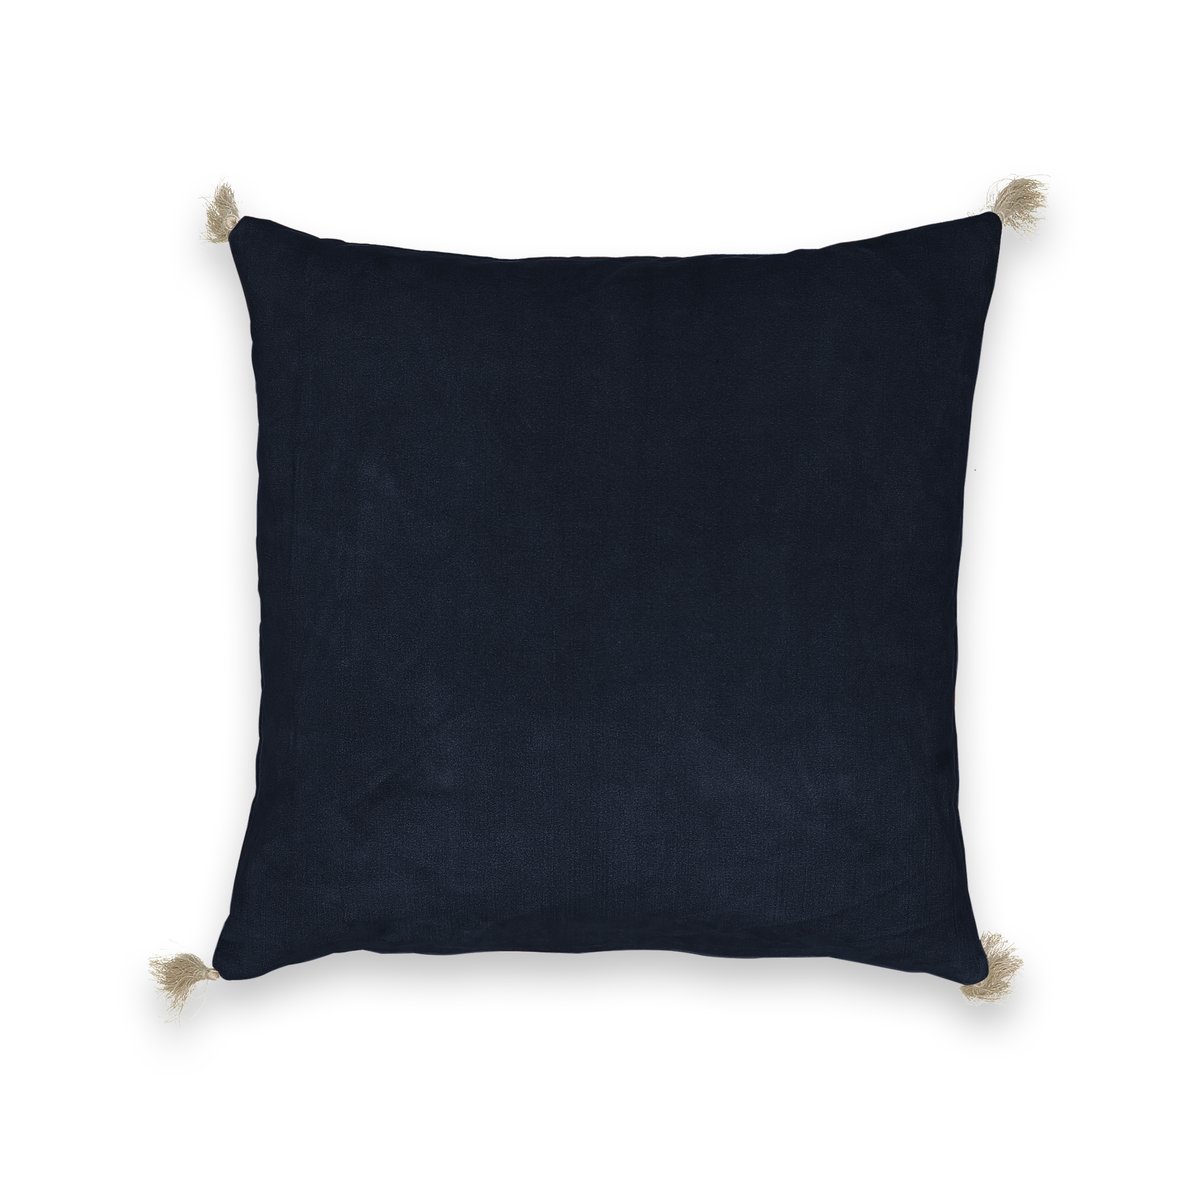 Чехол на подушку велюровый Cacolet 50 x 30 см синий